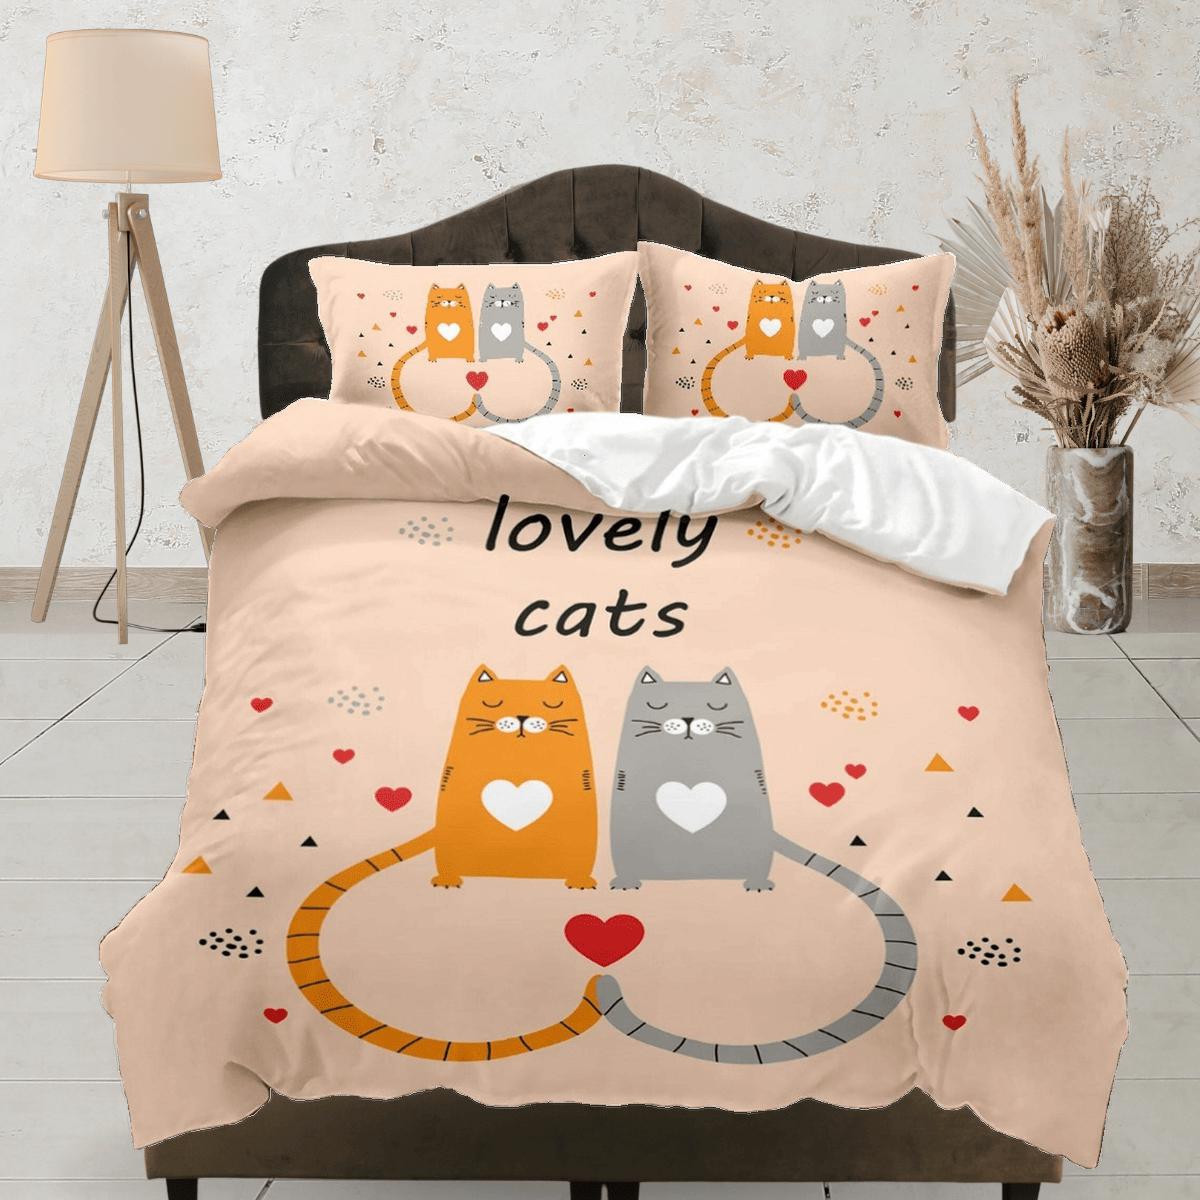 daintyduvet Lovely couple cat bedding, toddler bedding, kids duvet cover set, gift for cat lovers, baby bedding, baby shower gift, orange bedding